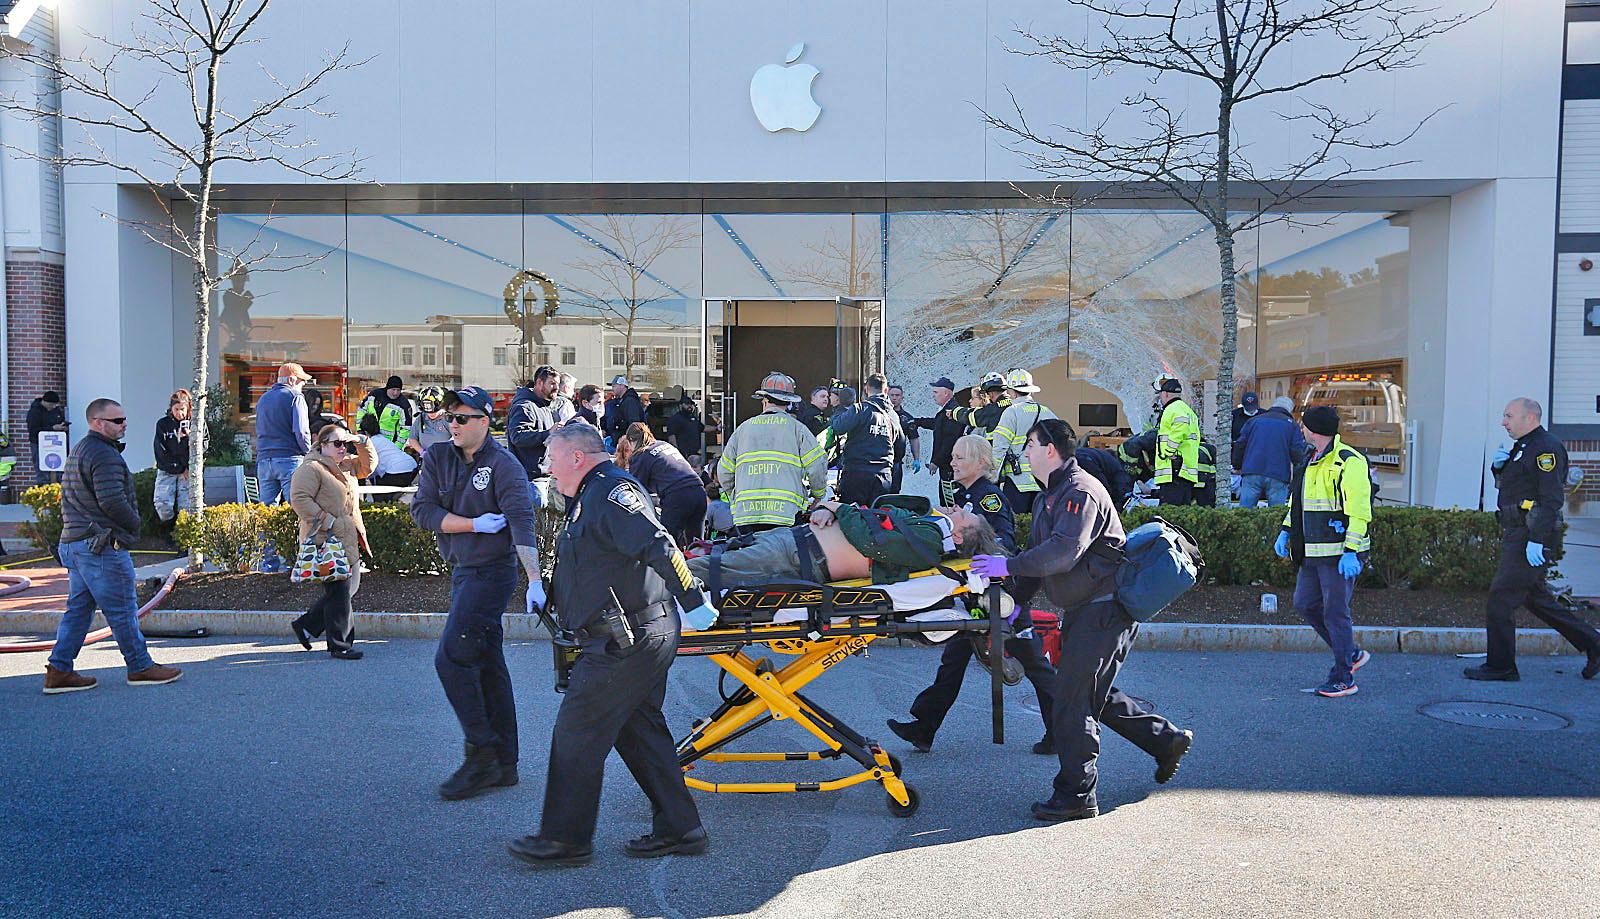 ΗΠΑ: Όχημα έπεσε σε κατάστημα της Apple στη Μασαχουσέτη – 1 νεκρός, 10 τραυματίες